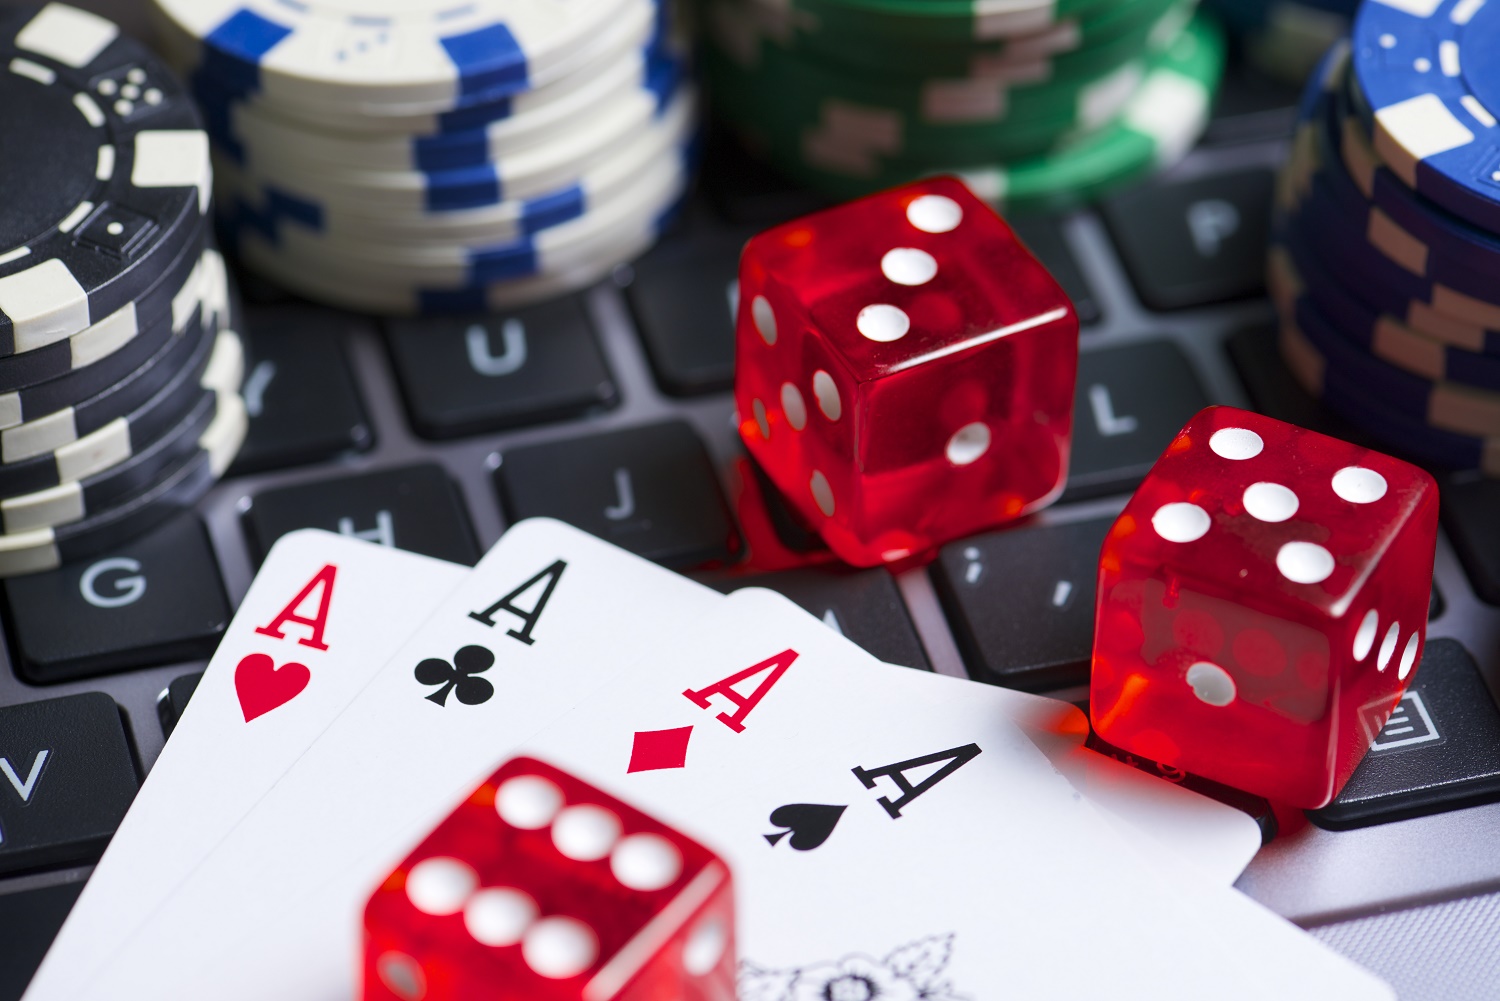 Chứng khoán phái sinh dễ trở thành hình thức cờ bạc trá hình